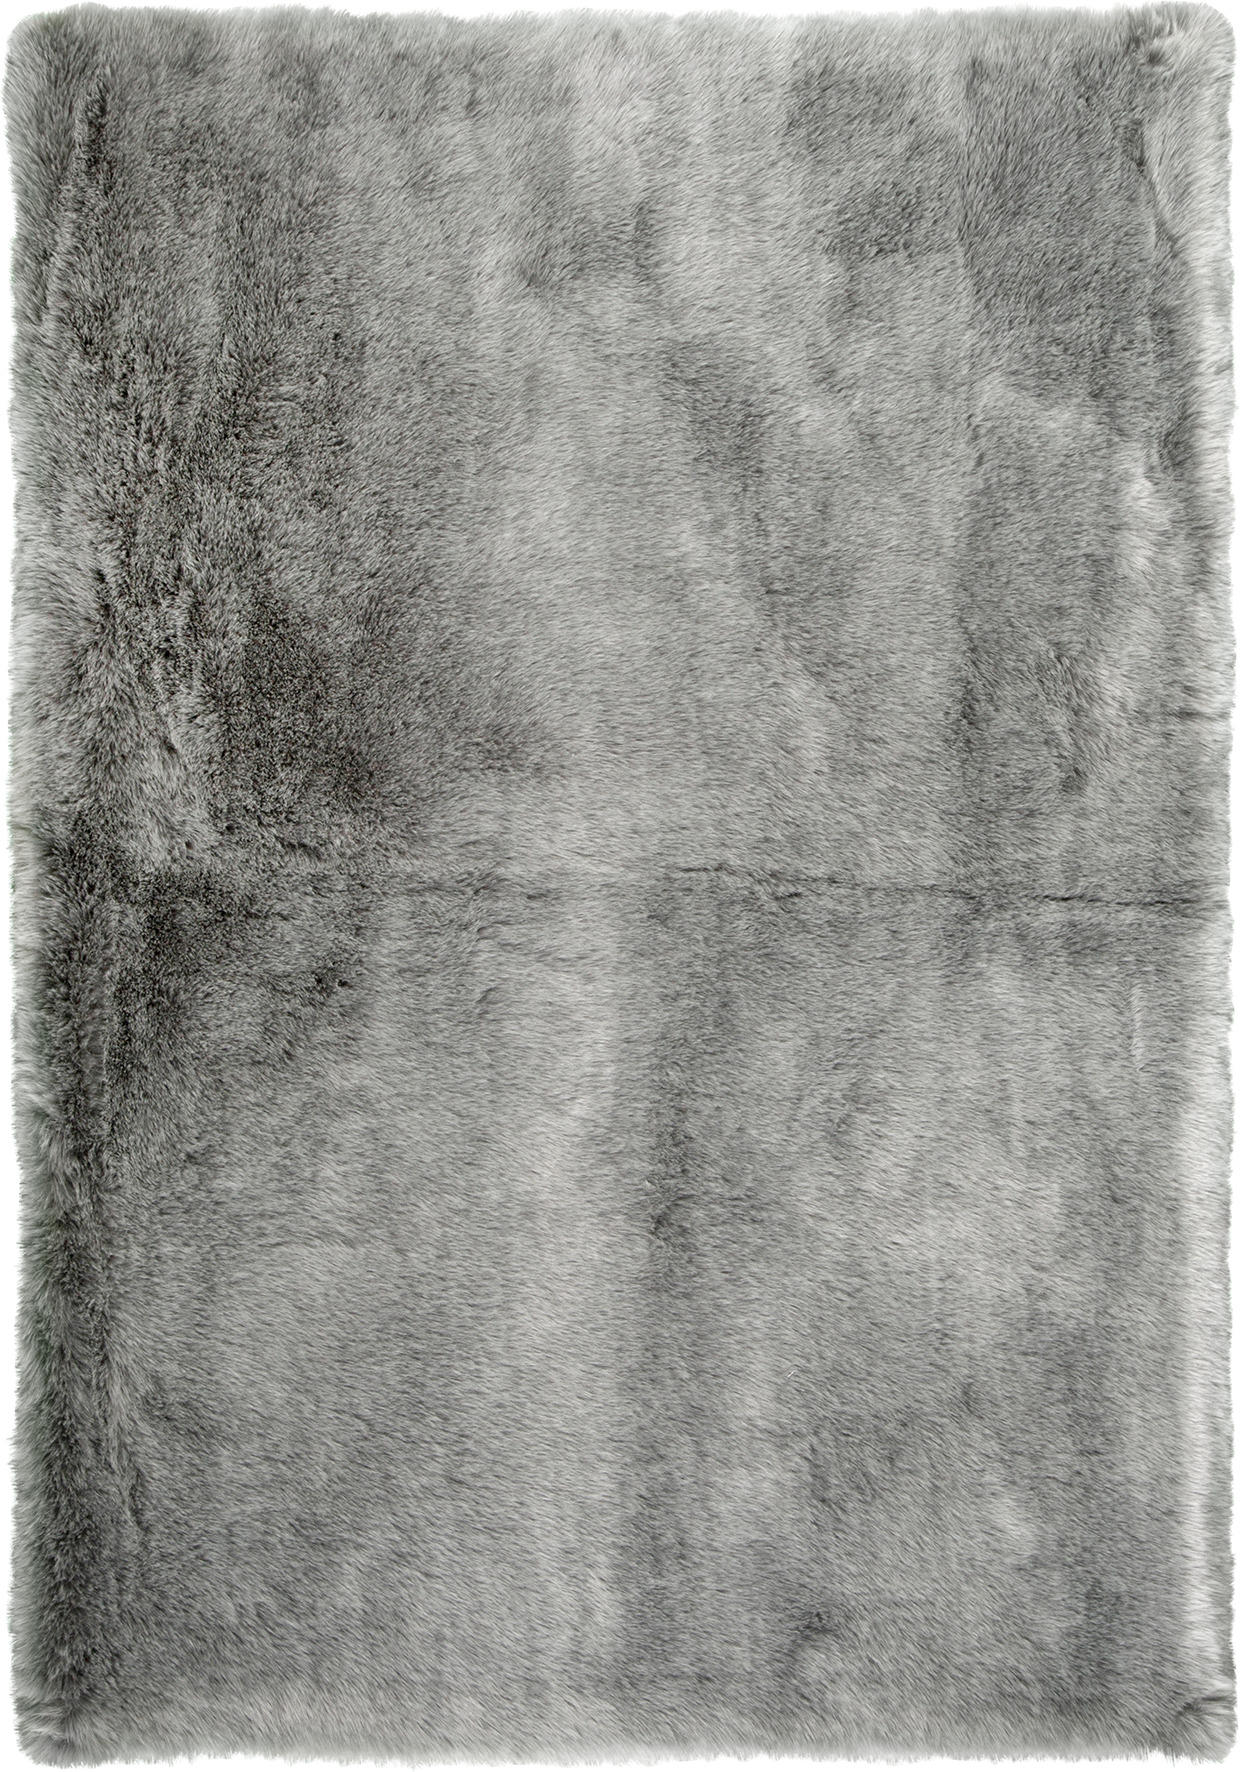 KUNSTFELL  60/110 cm  Silberfarben   - Silberfarben, Design, Textil (60/110cm) - Novel